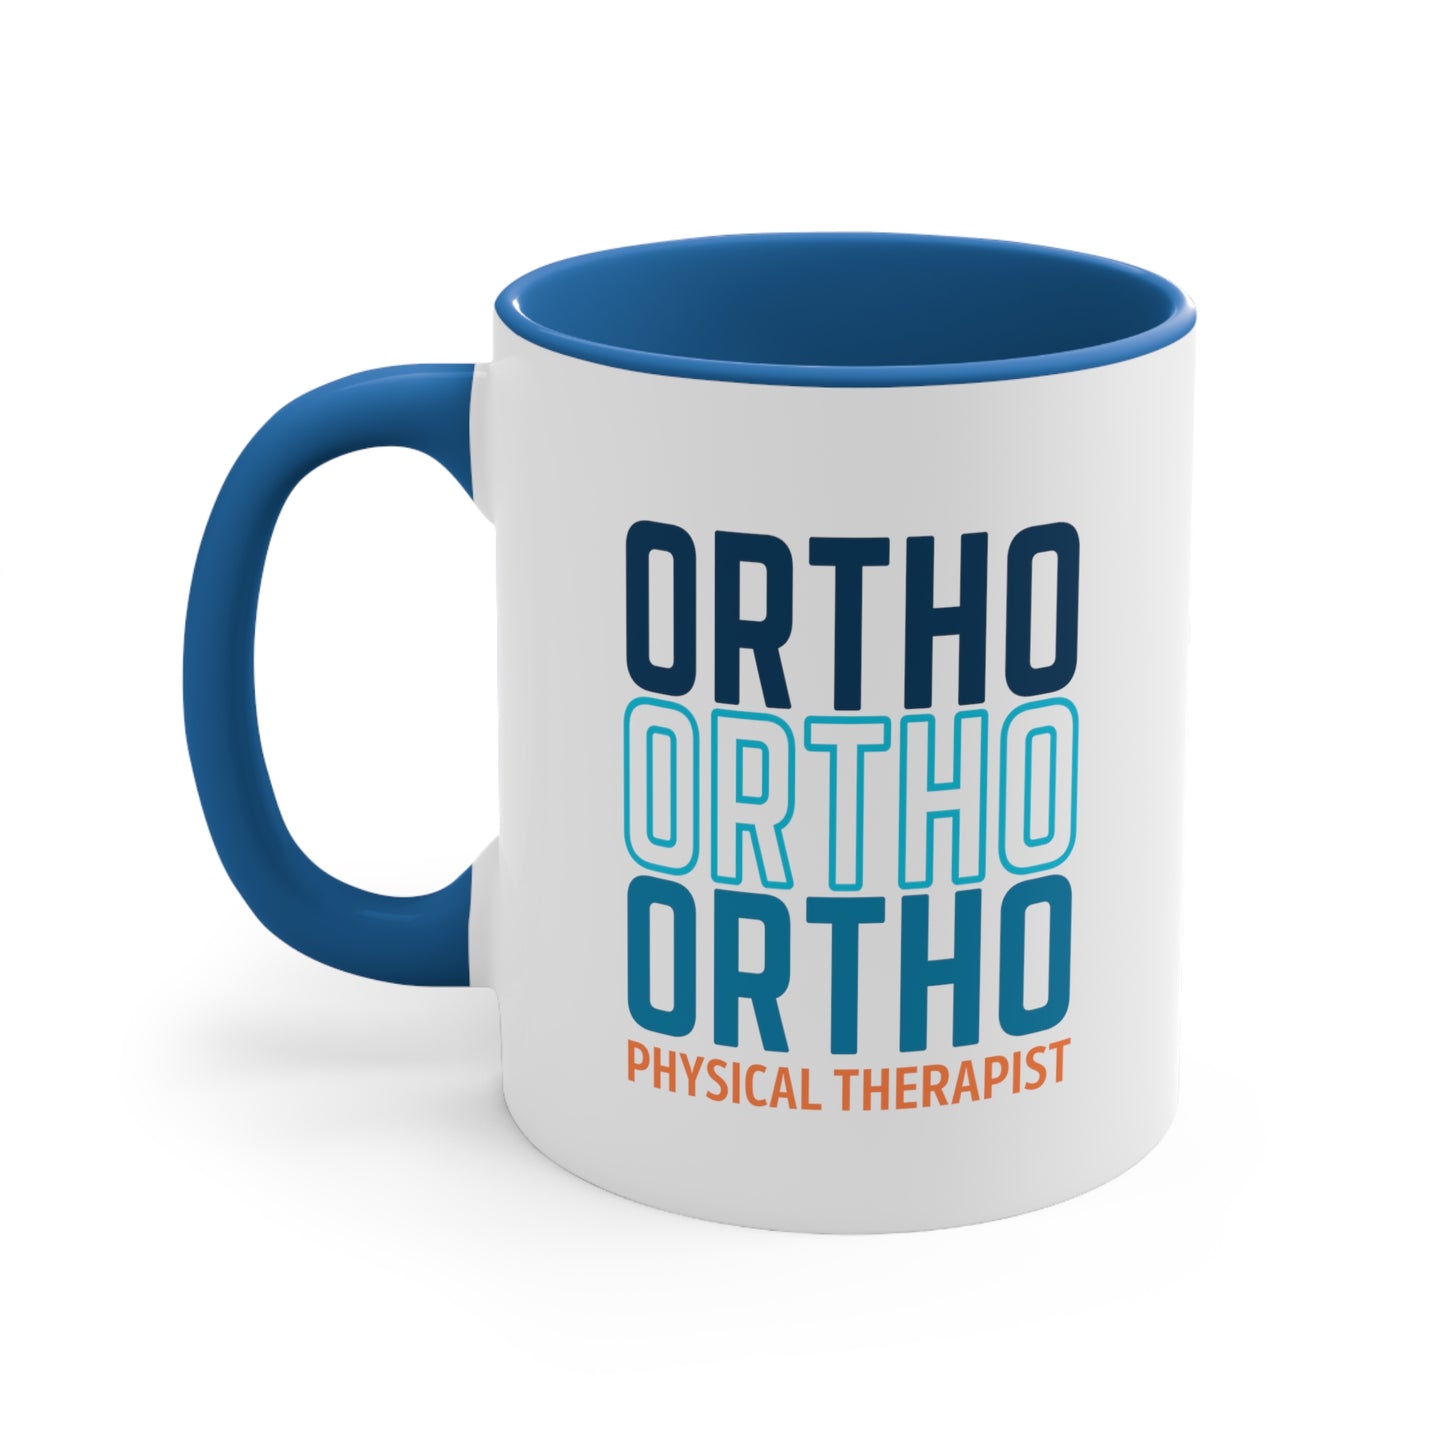 ORTHO Mug, 11oz